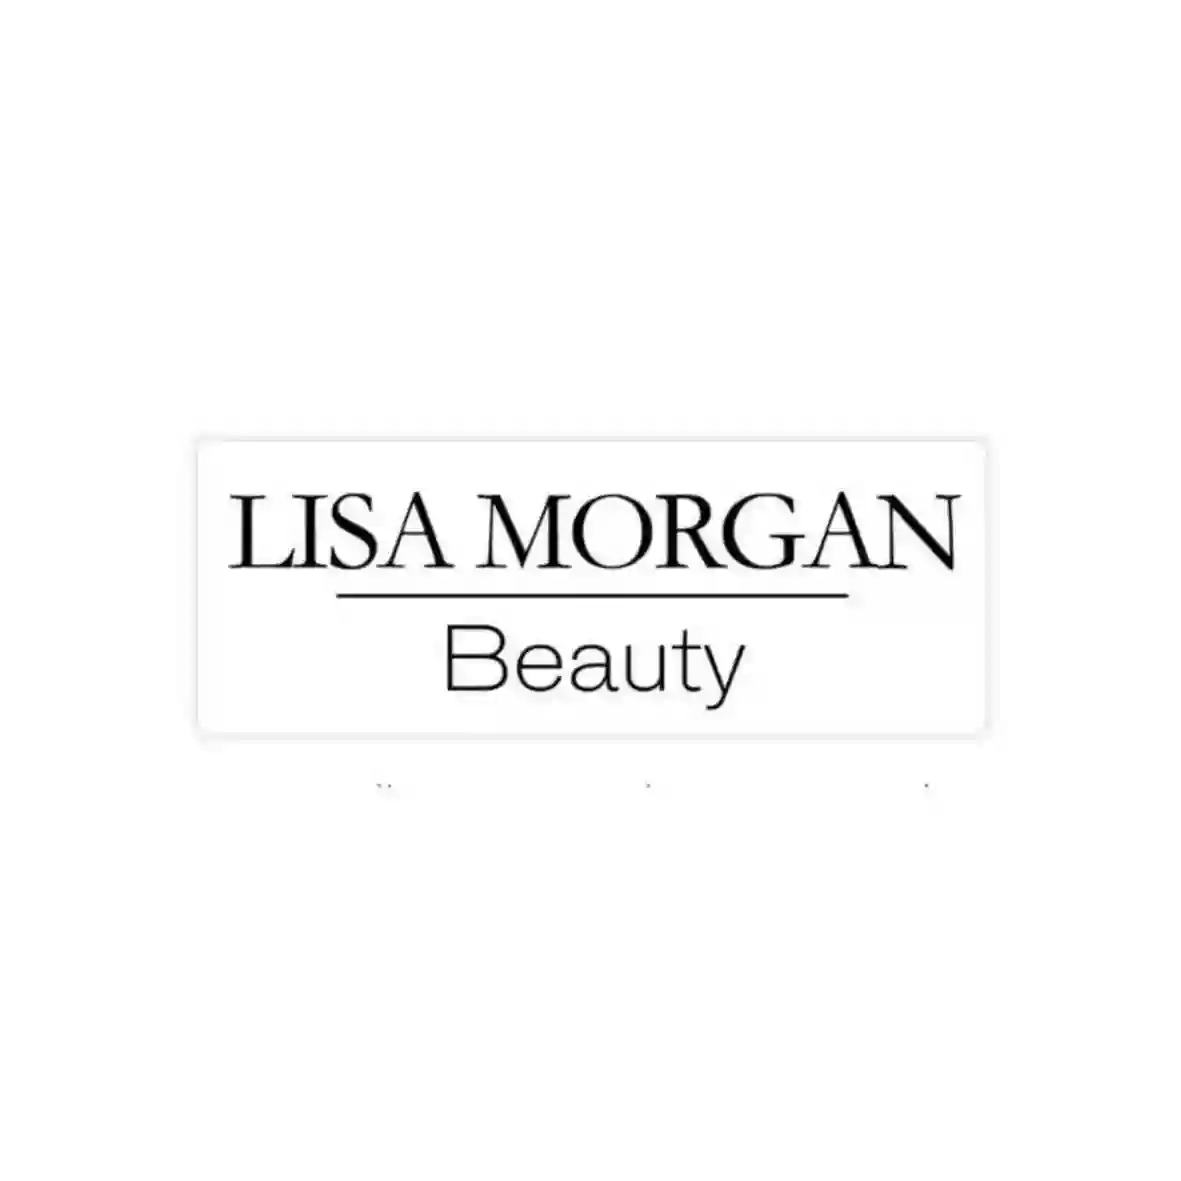 Lisa Morgan Beauty